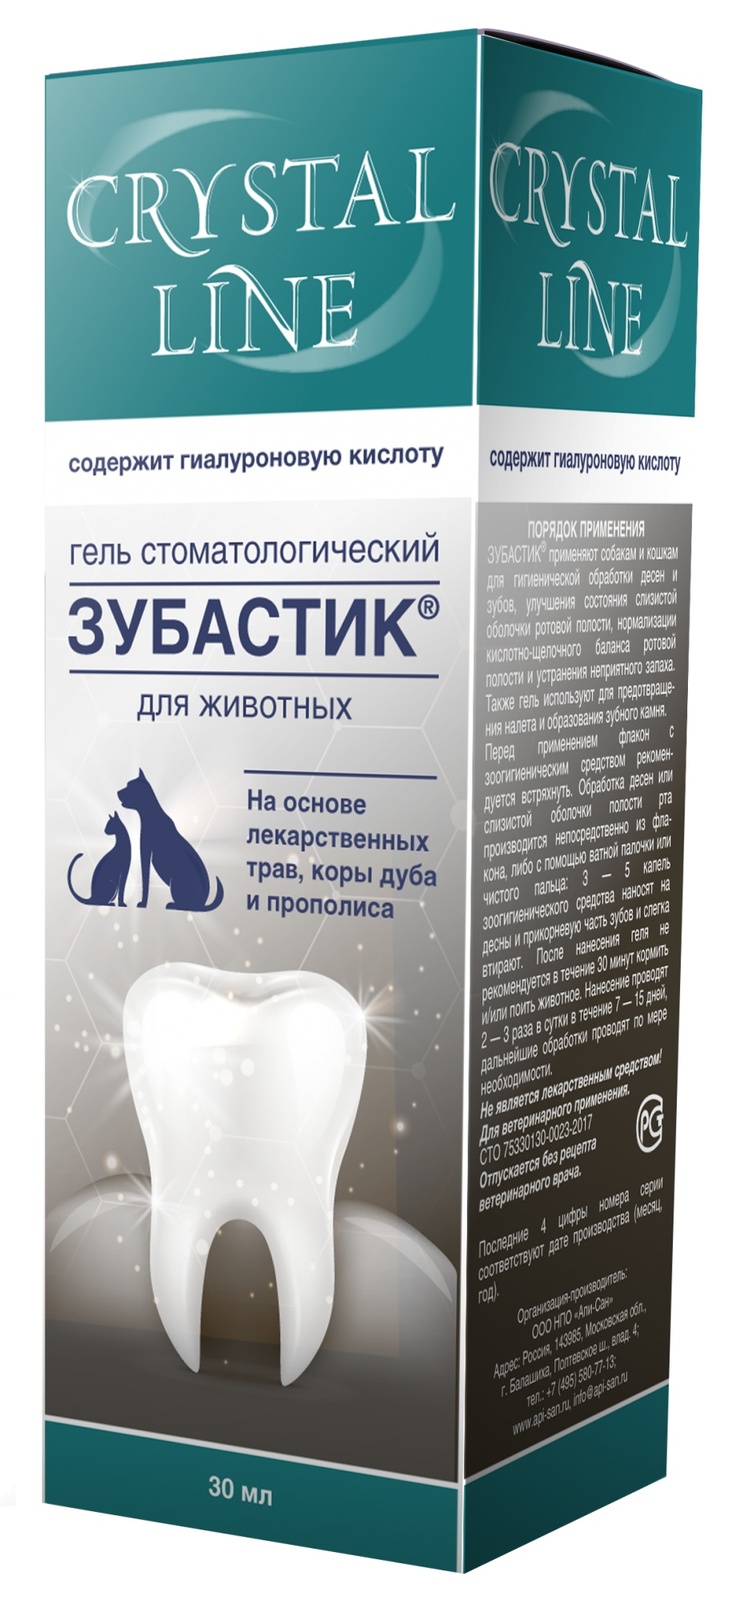 Apicenna Apicenna зубастик гель для чистки зубов Crystal line (30 г) гель стоматологический для животных зубастик crystal line 30мл